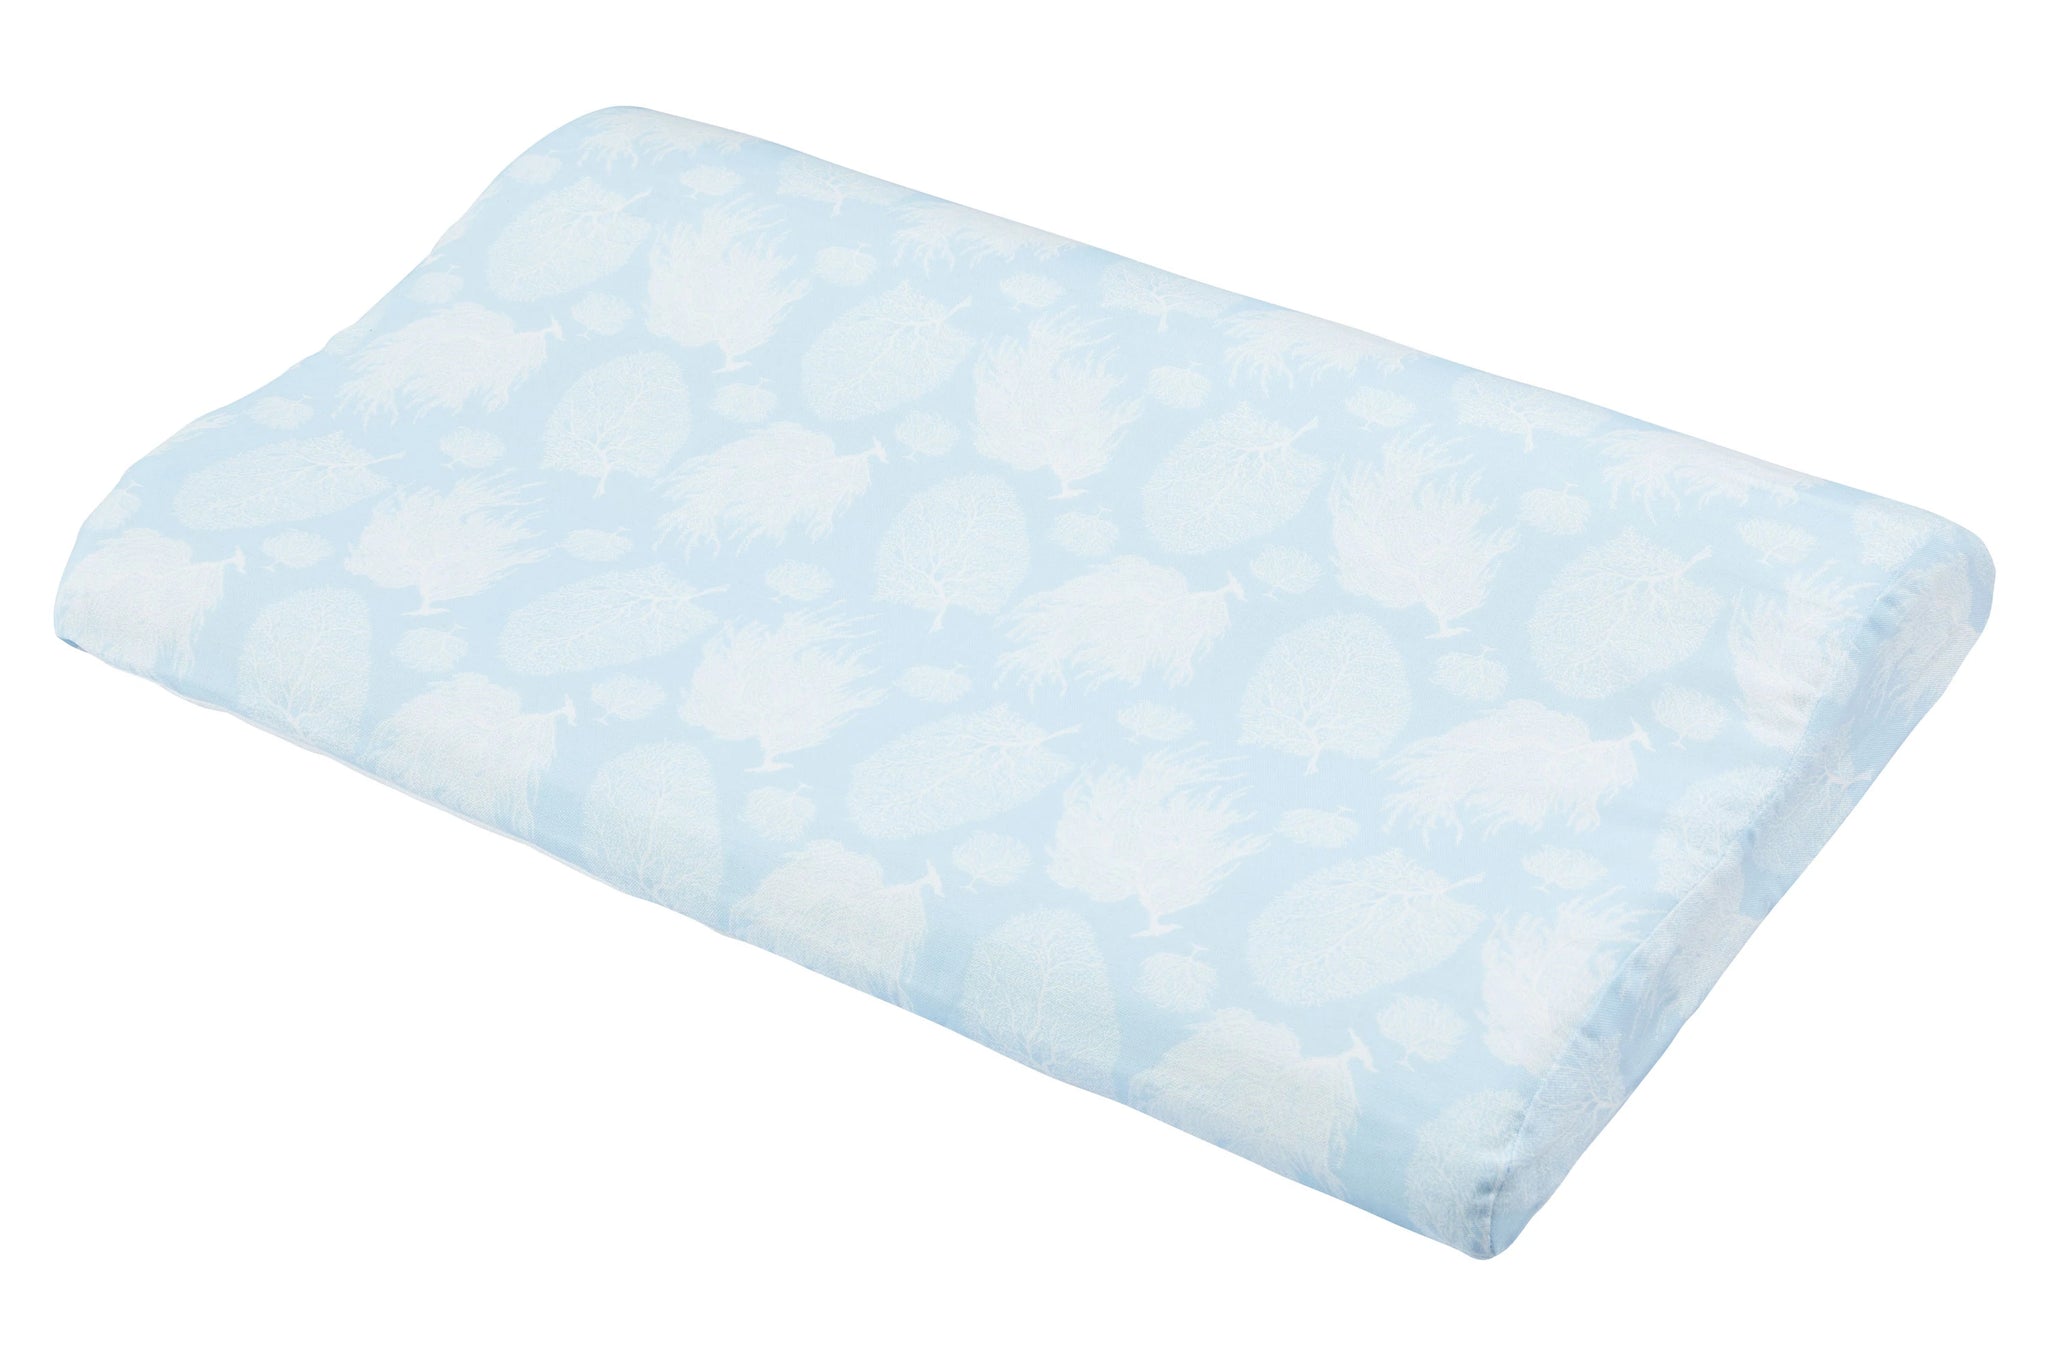 Bamboo Cotton Toddler Pillow with Pillowcase (Medium) - Sea Fan